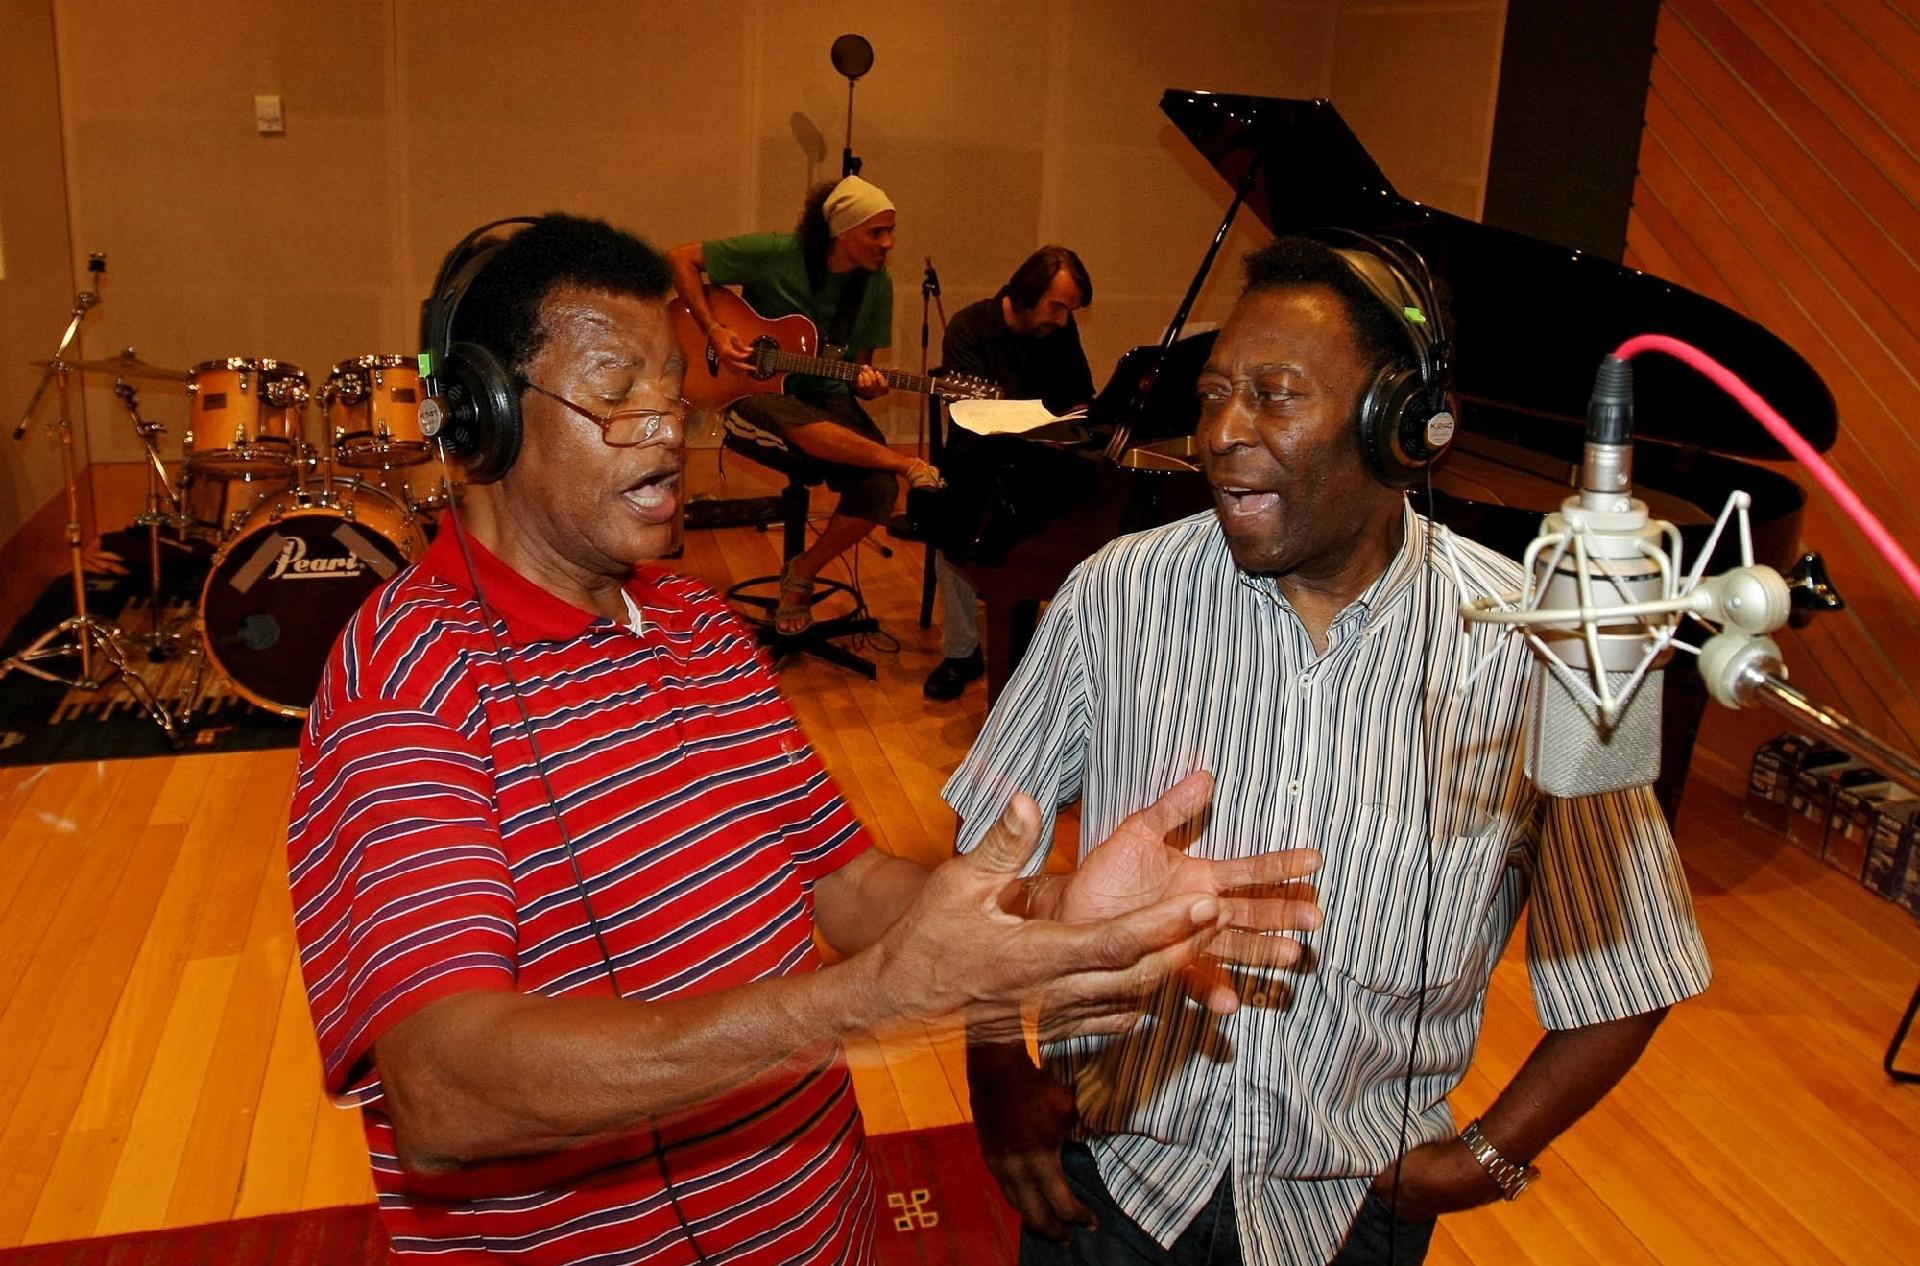 05.fev.2009 - O cantor Jair Rodrigues e o ex-jogador de futebol Pelé gravam juntos em estúdio na zona sul de São Paulo. - Paulo Liebert/Estadão Conteúdo